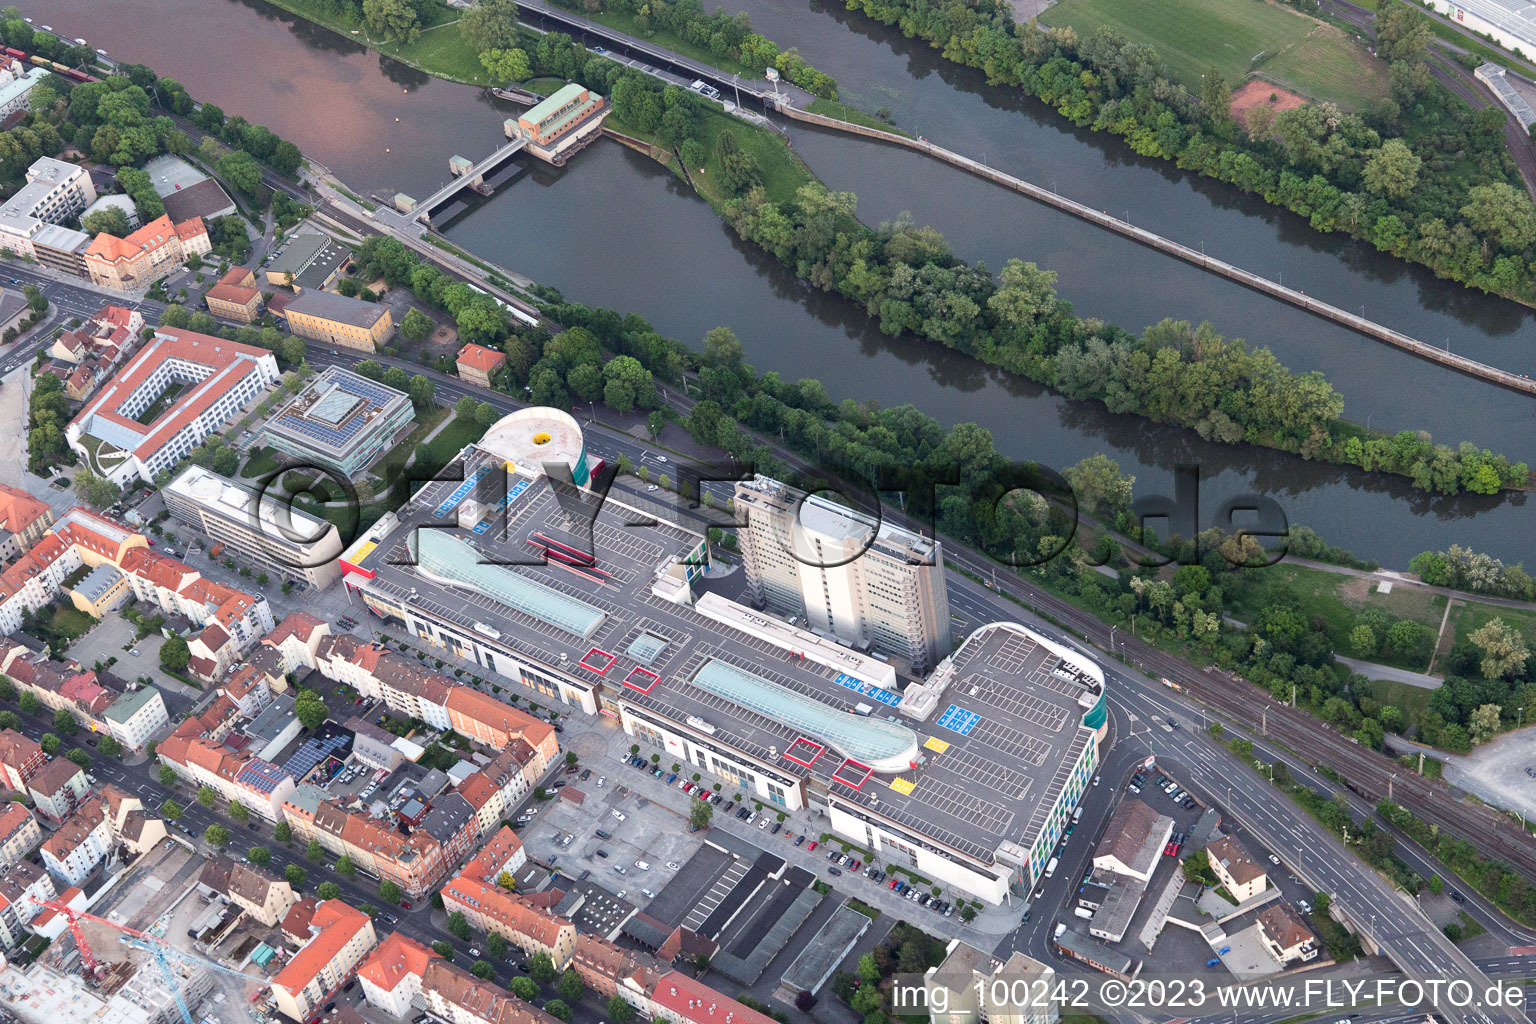 Schweinfurt im Bundesland Bayern, Deutschland aus der Drohnenperspektive